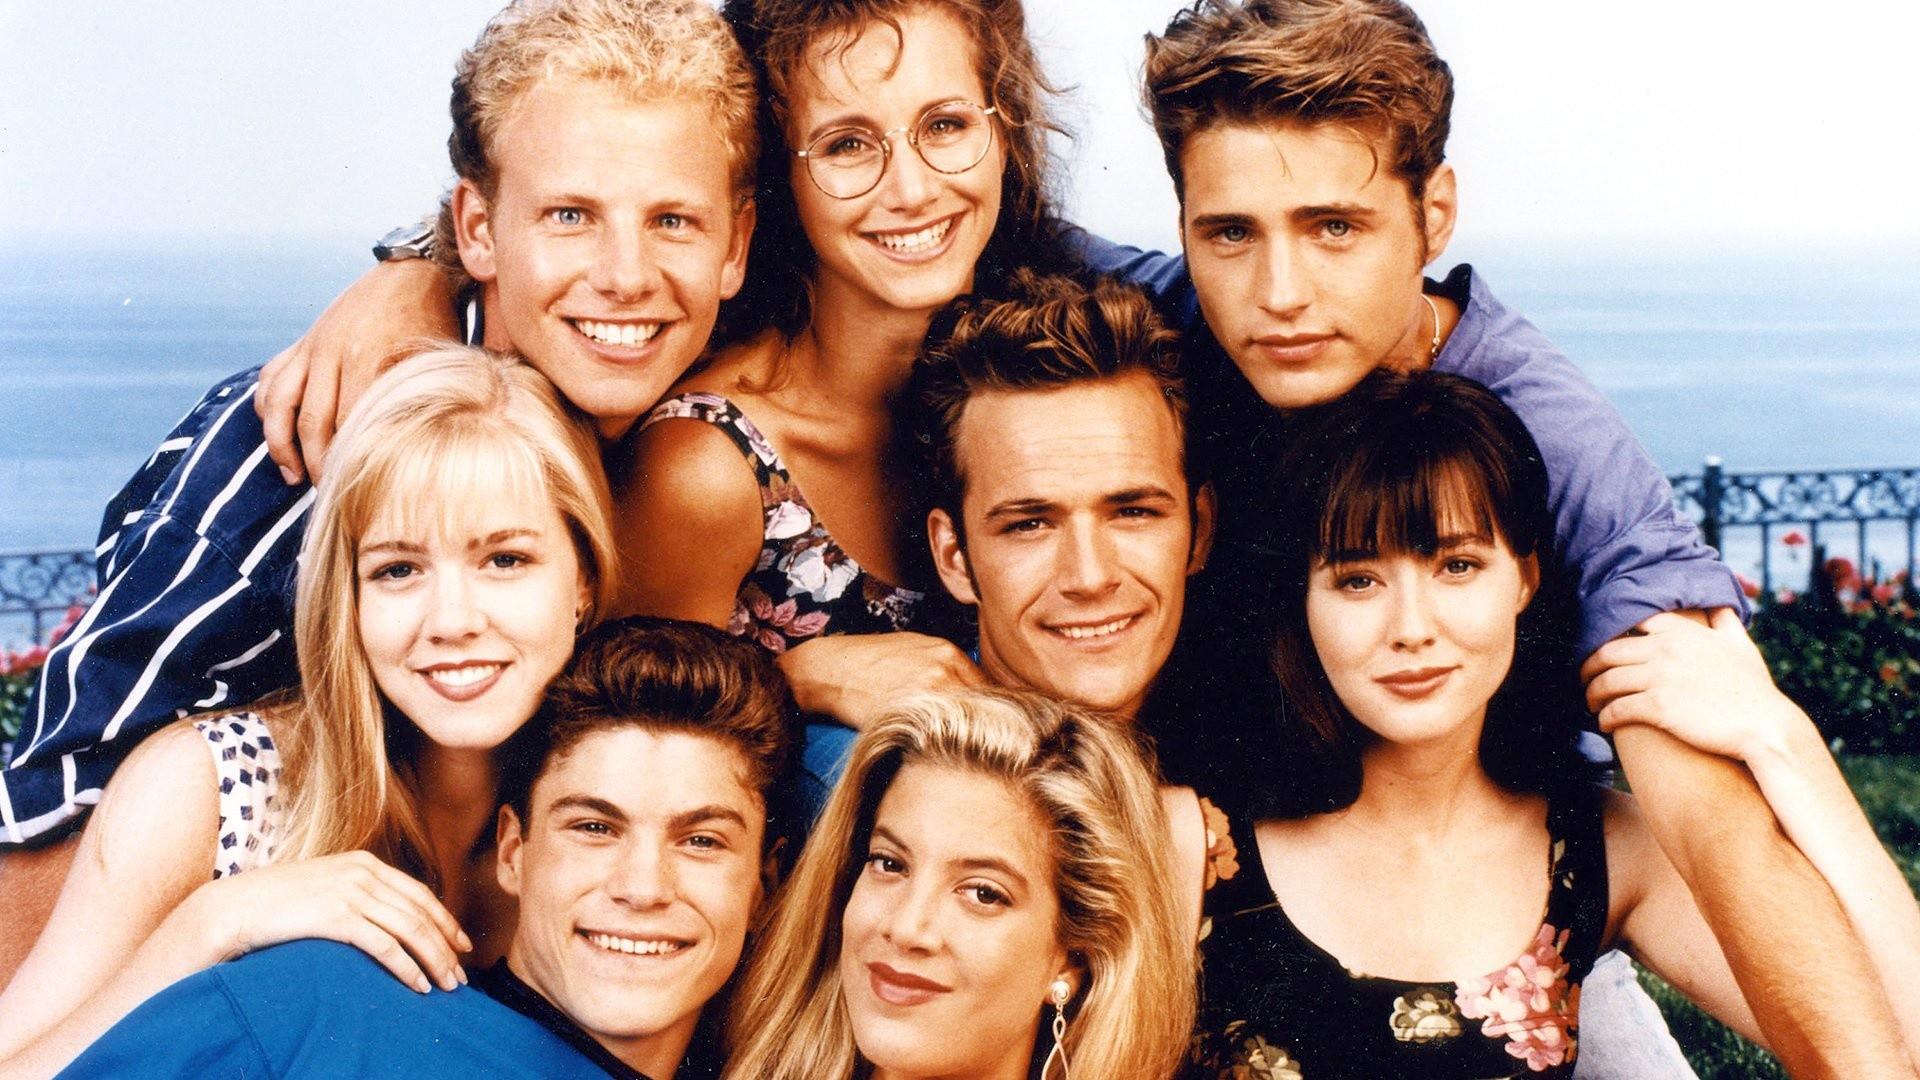 Беверли-Хиллз 90210 – 1 сезон 4 серия «В первый раз» / Beverly Hills, 90210